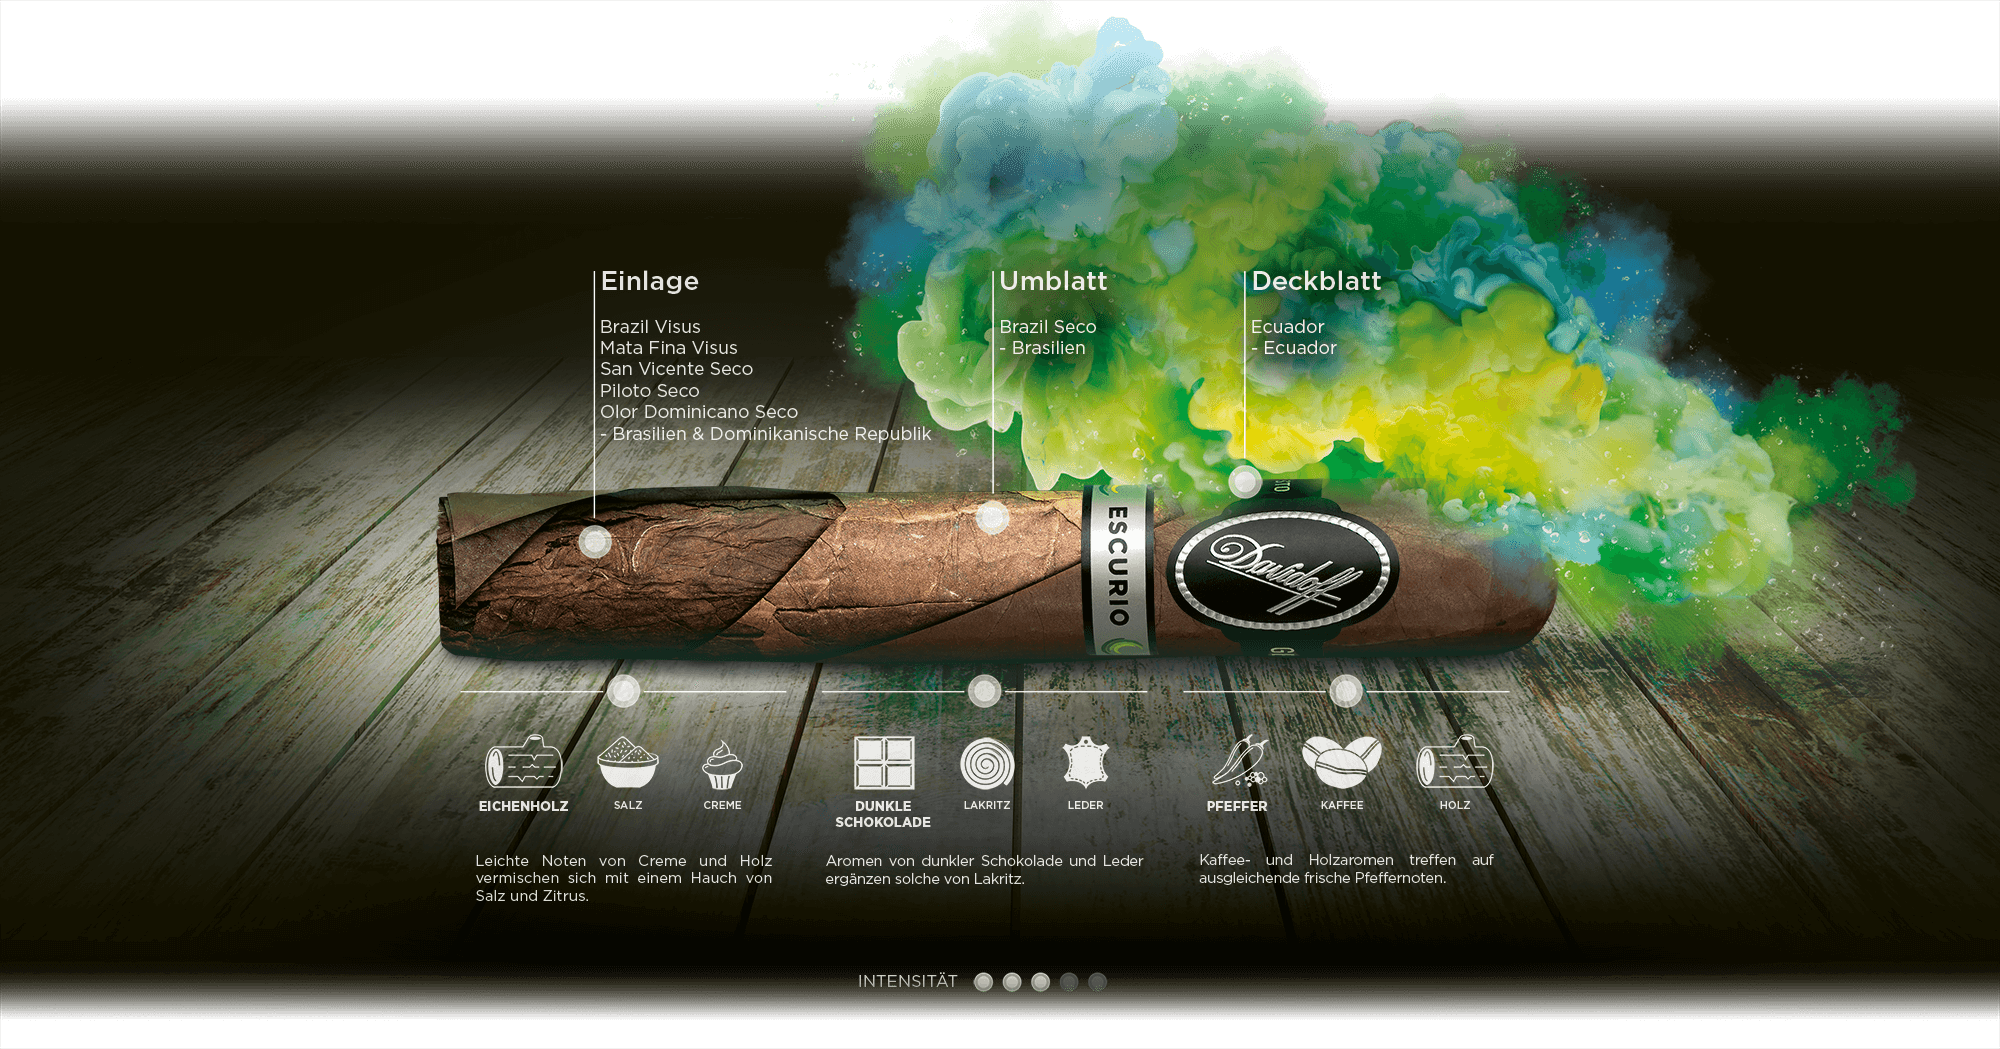 Genussdetails von Davidoff Escurio-Zigarren inklusive Aromen, Tabakinformationen und Intensität.